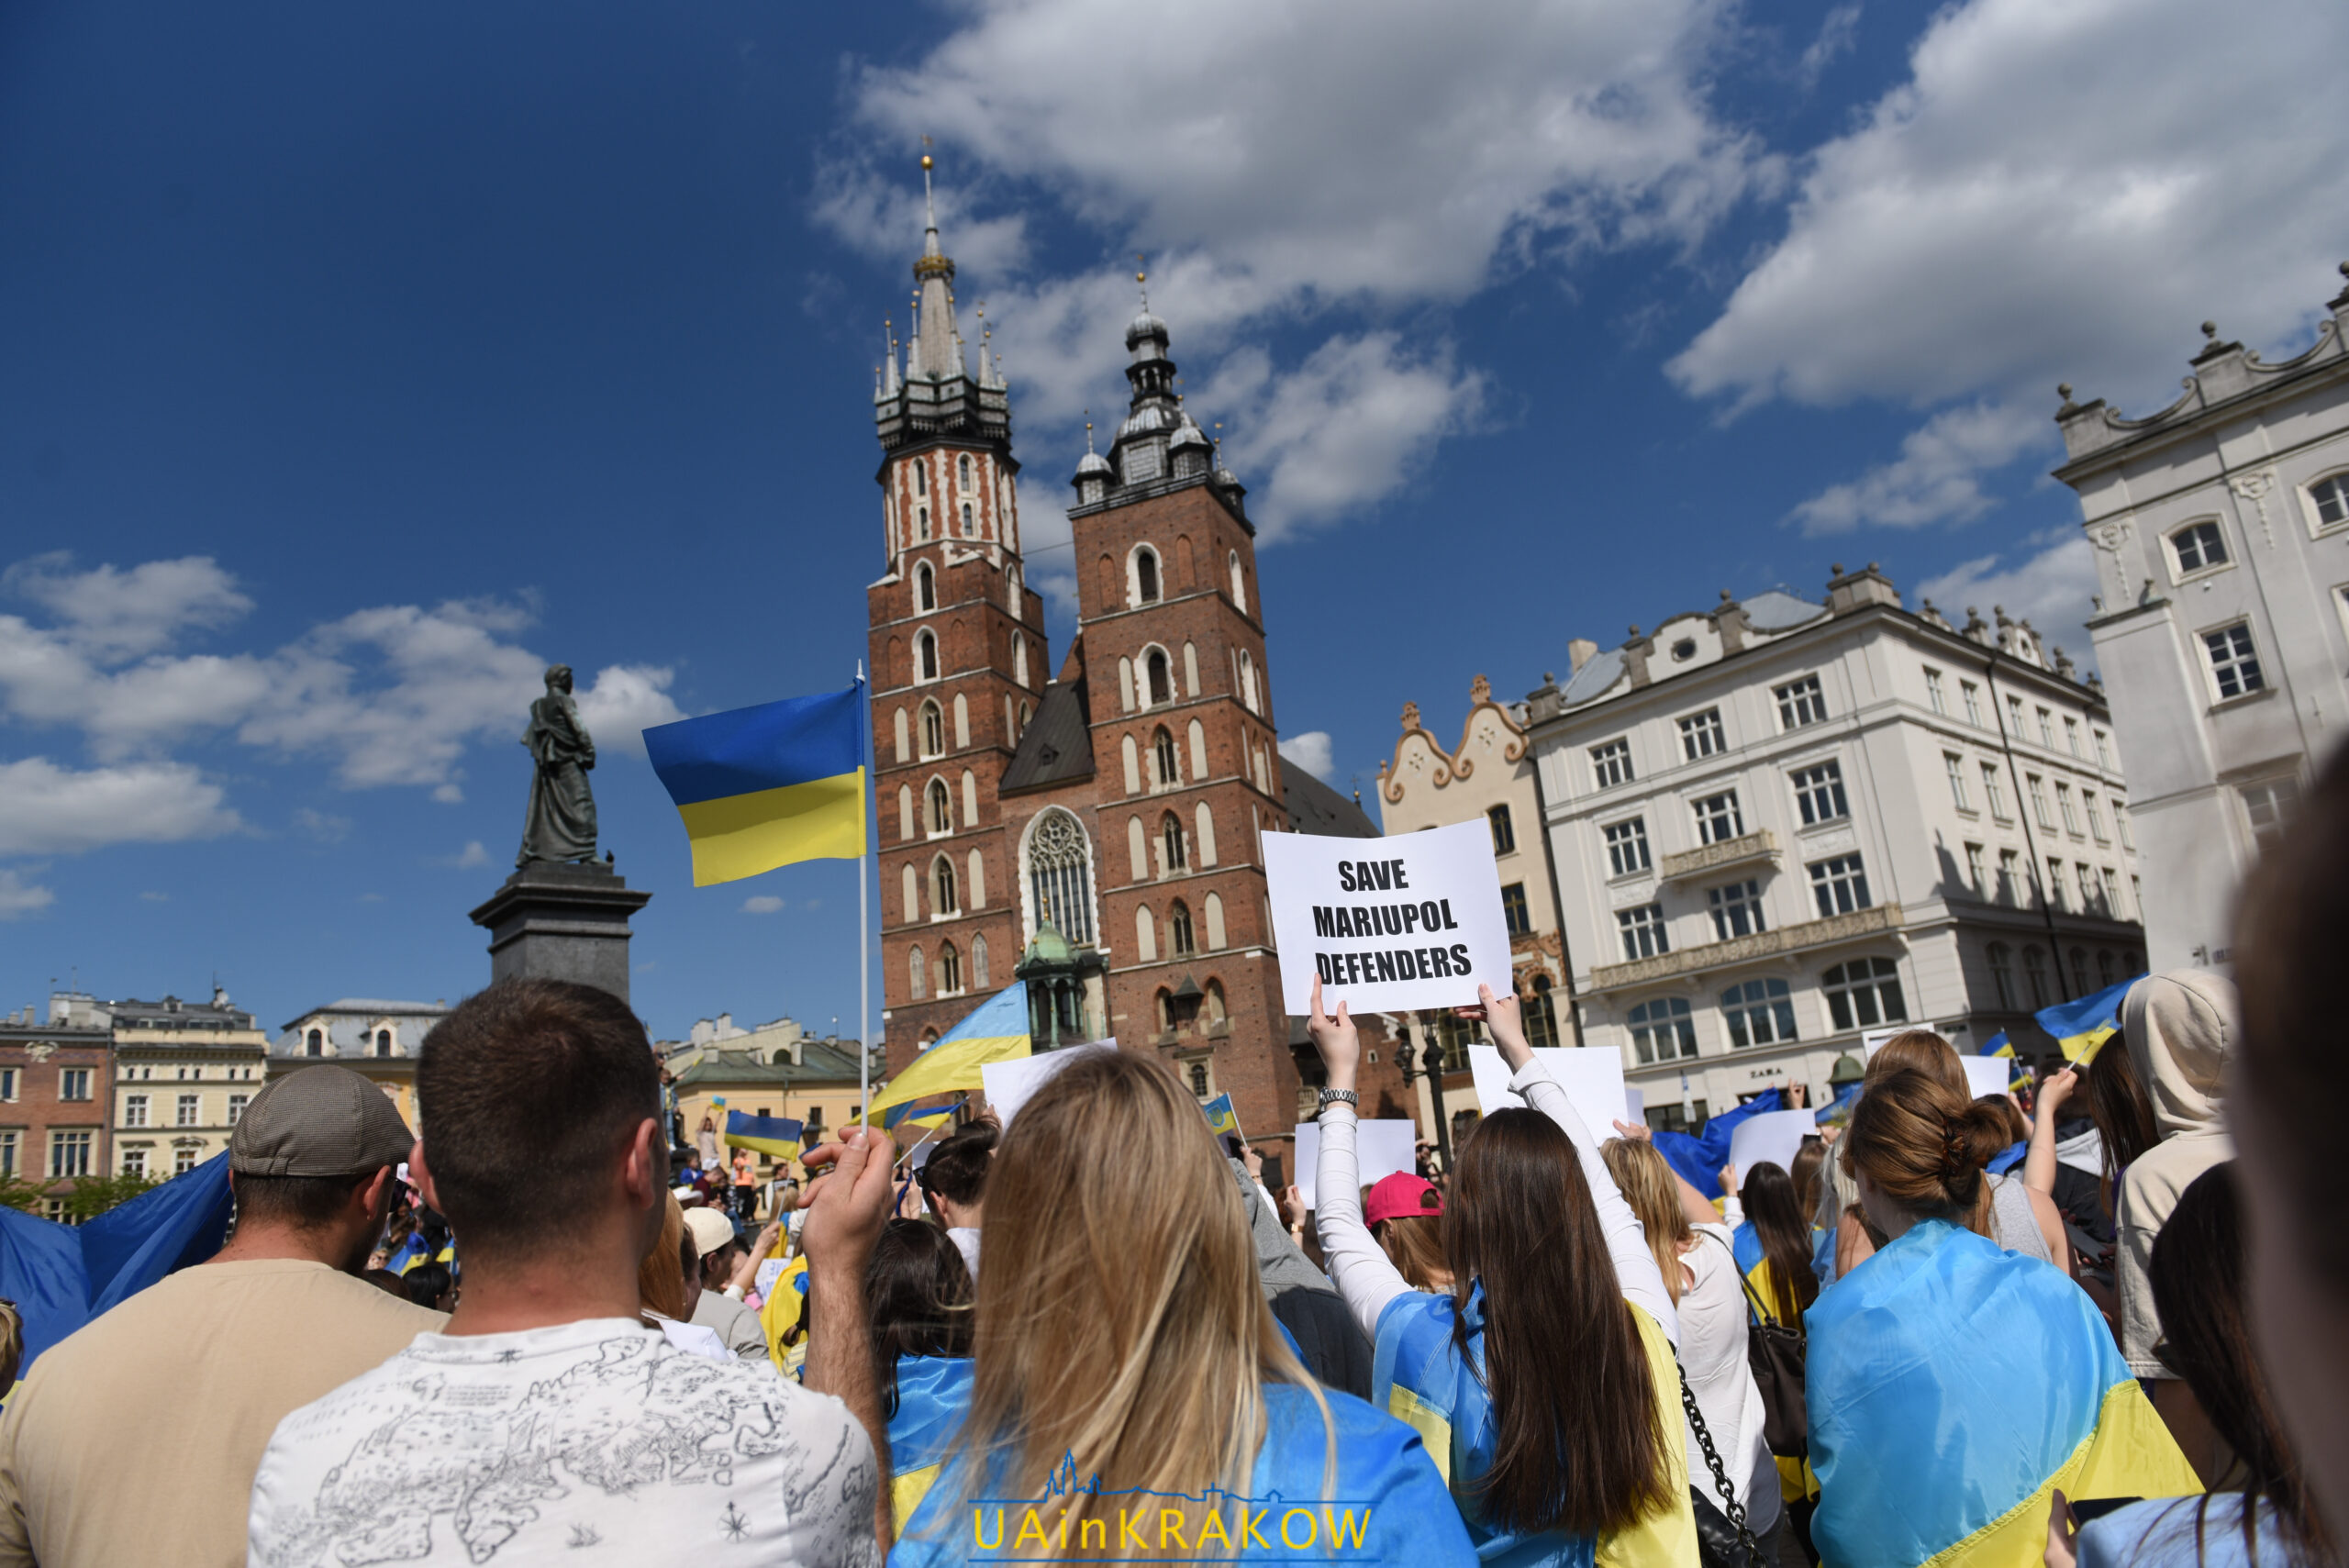 У Кракові пройшла акція на підтримку Маріуполя [ФОТО] dsc 3229 scaled